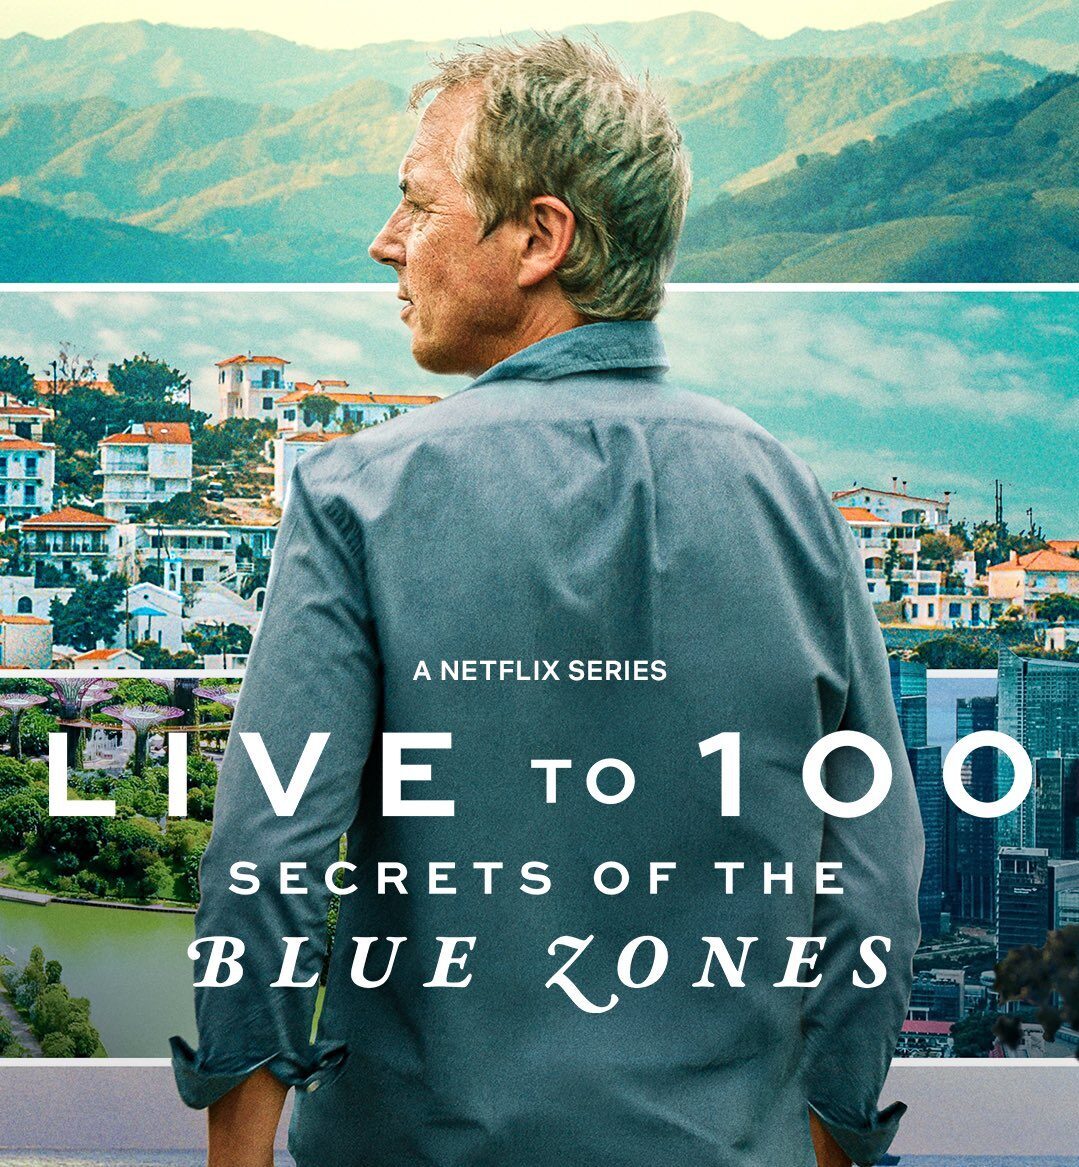 Dan Buettner of National Geographic's Blue Zones Docuseries on Netflix